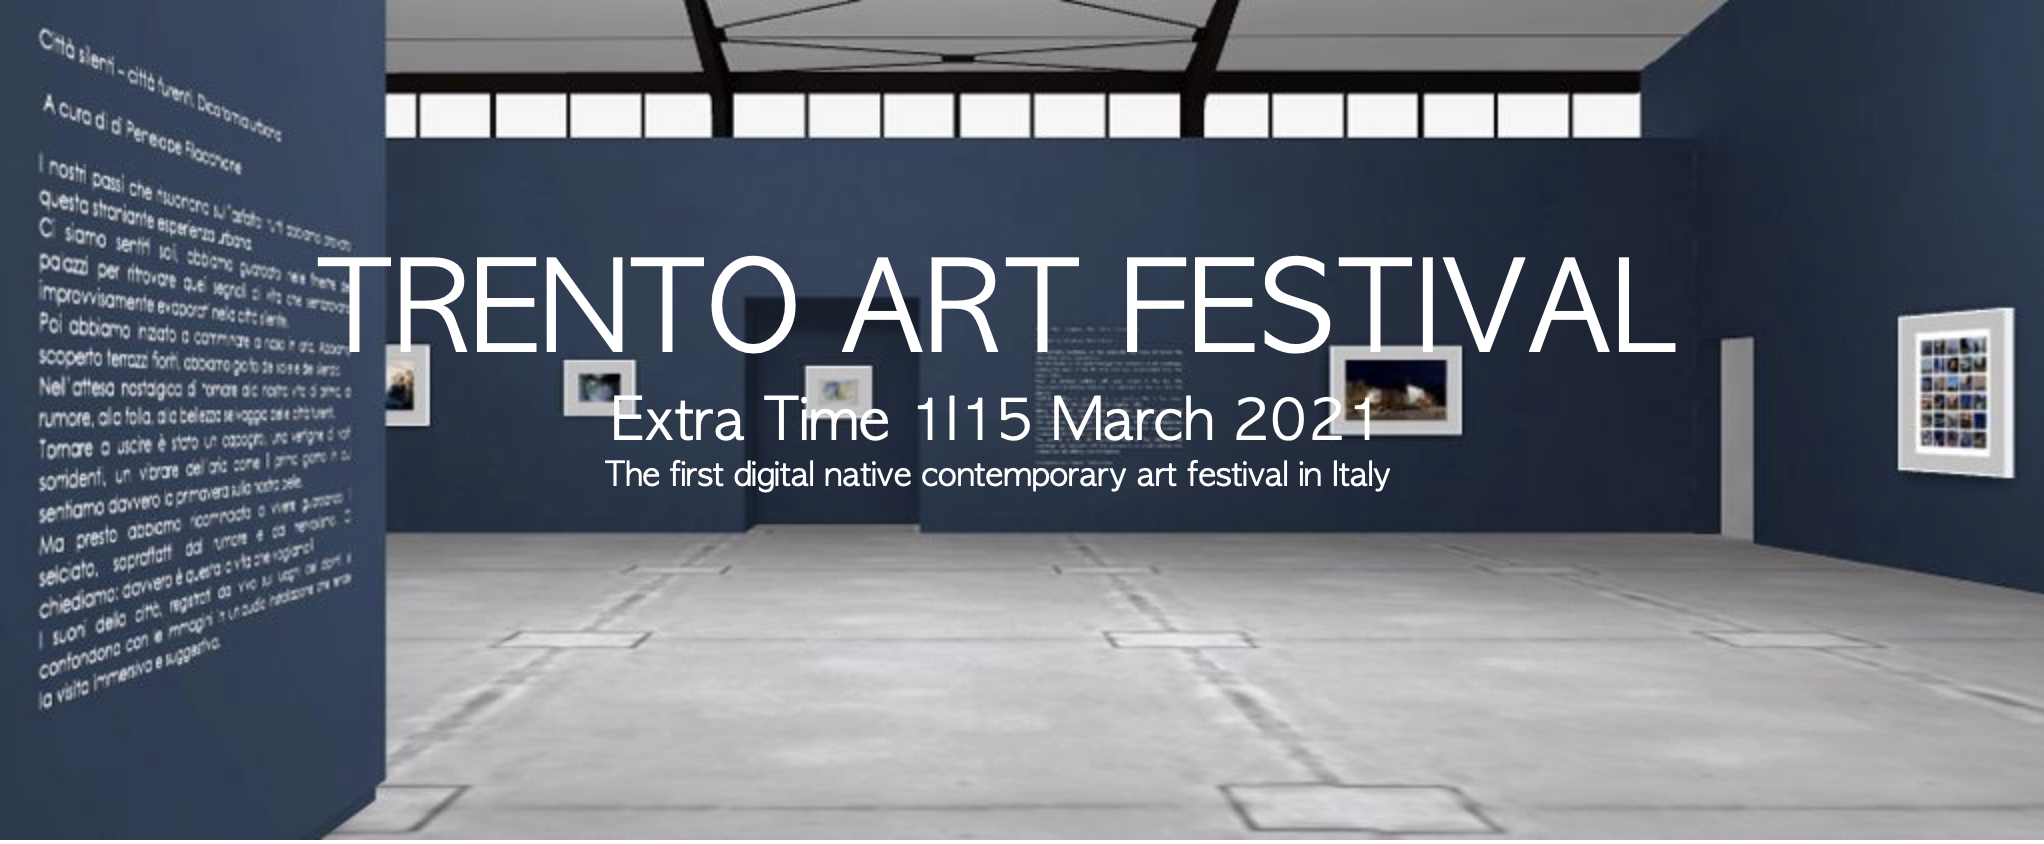 Trento Art Festival: Gewinner ausgewählt